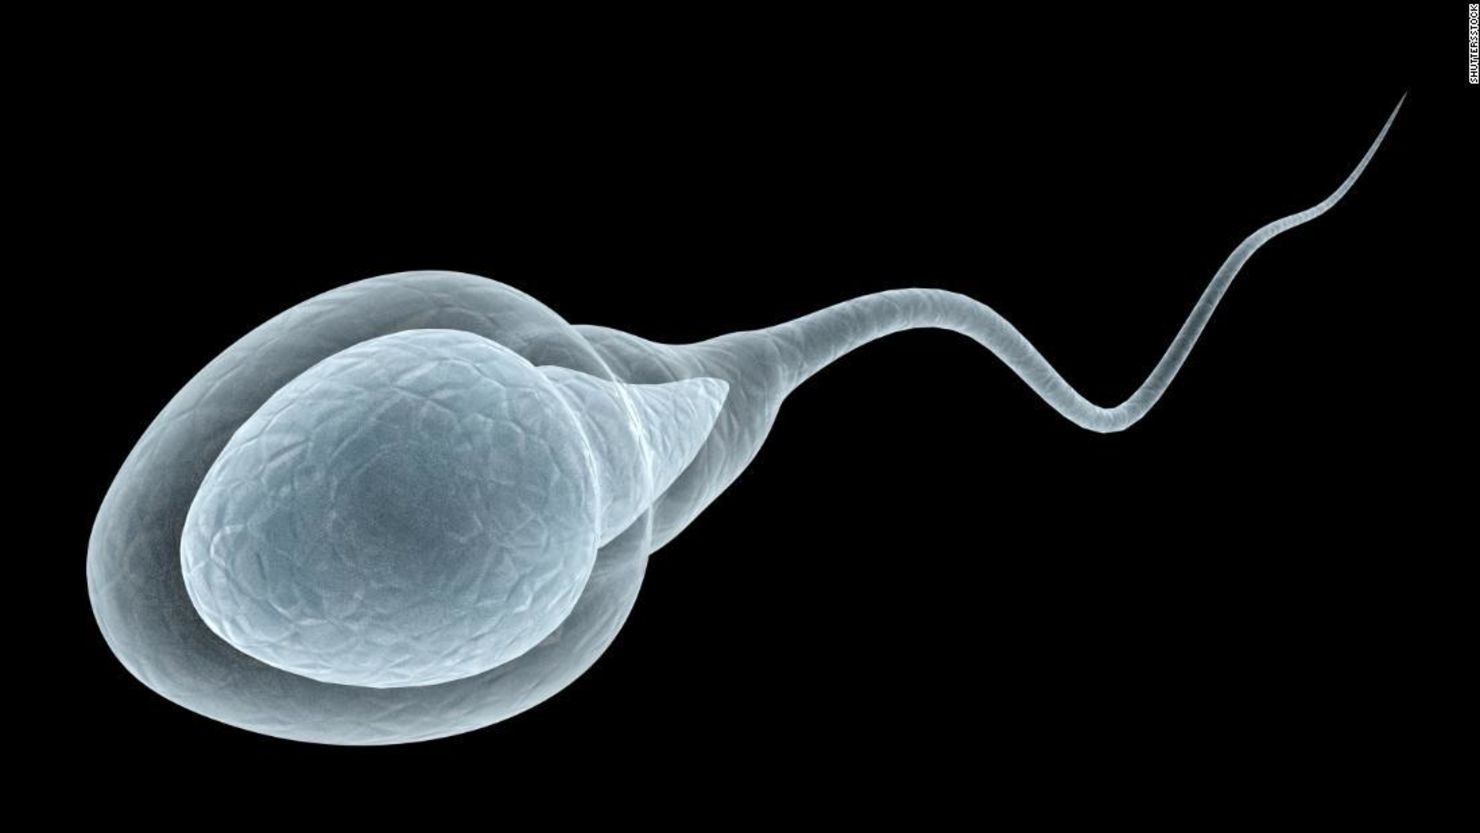 Un nuevo estudio contradice las creencias sobre los espermatozoides que hemos mantenido durante siglos.